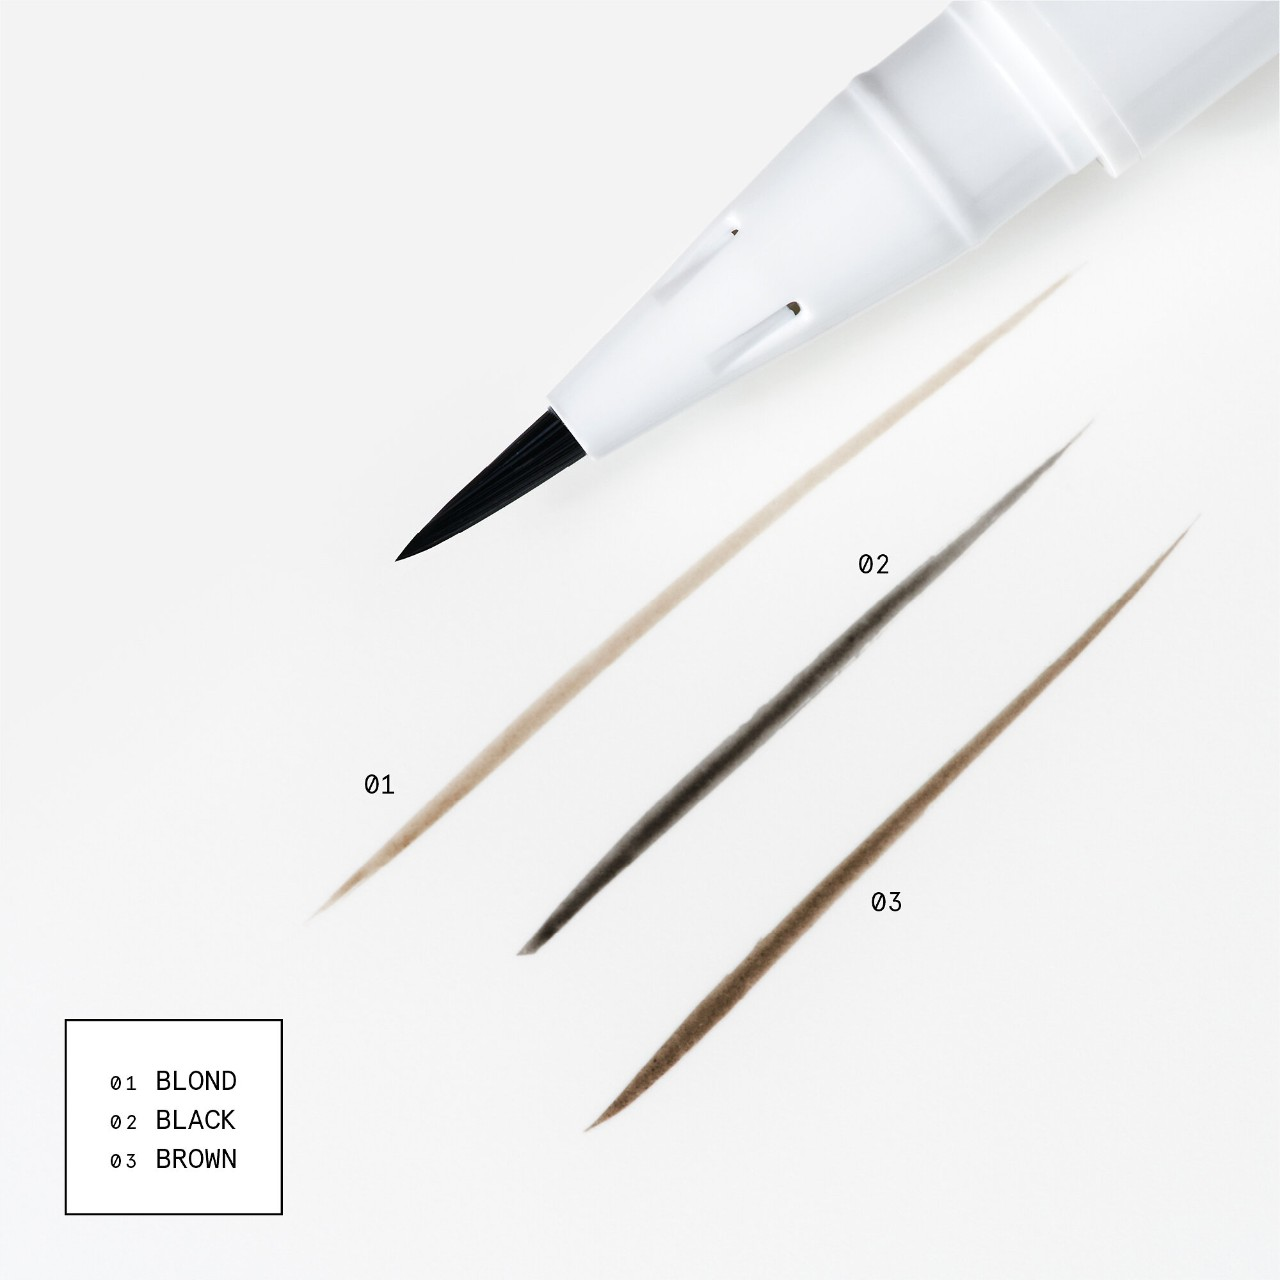 Brow Flick Microfine Detailing Eyebrow Pen